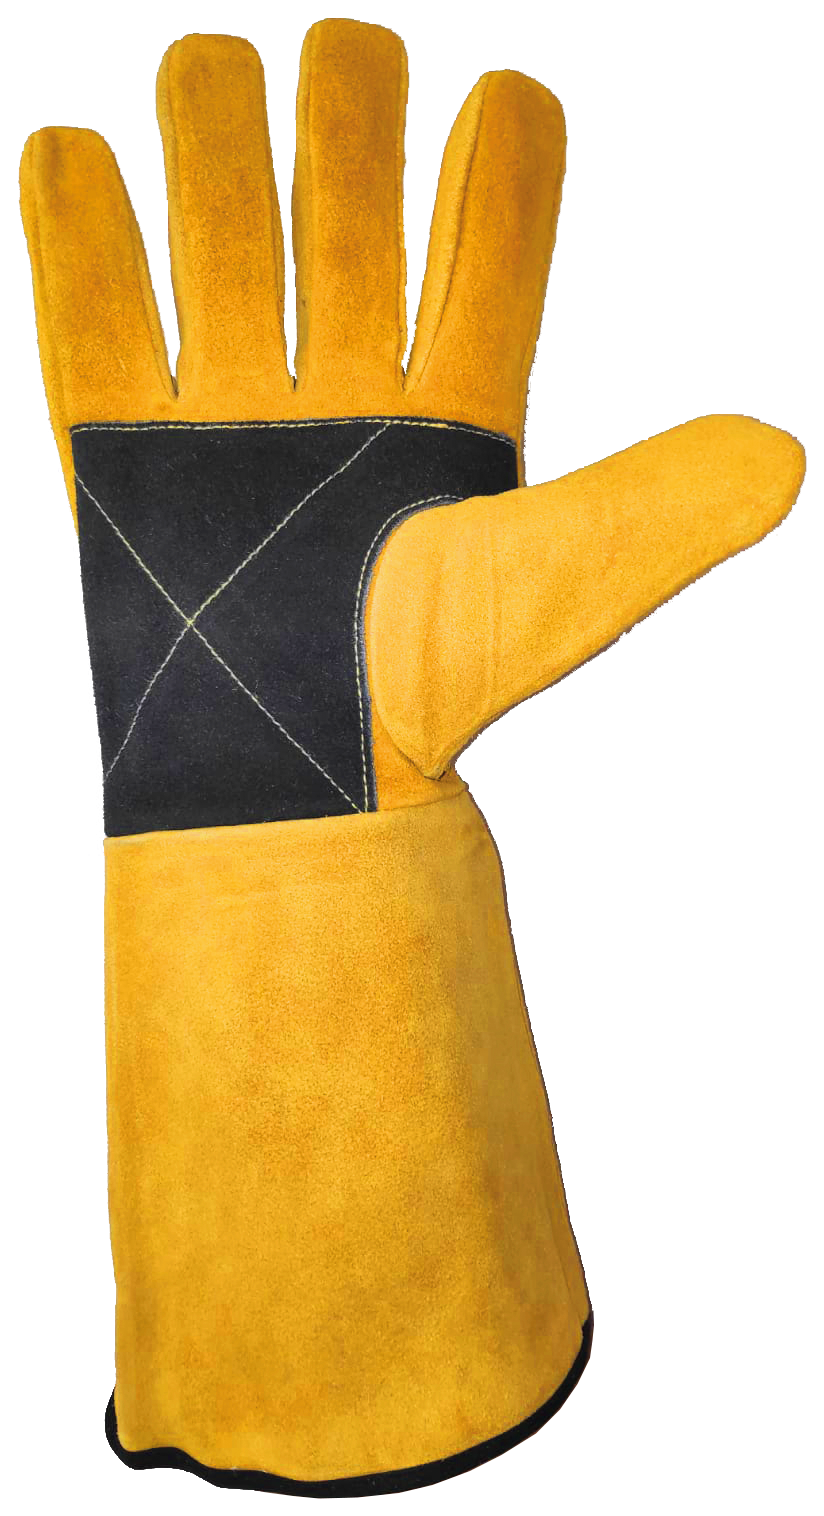 Le gant de soudeur : un équipement de protection individuelle